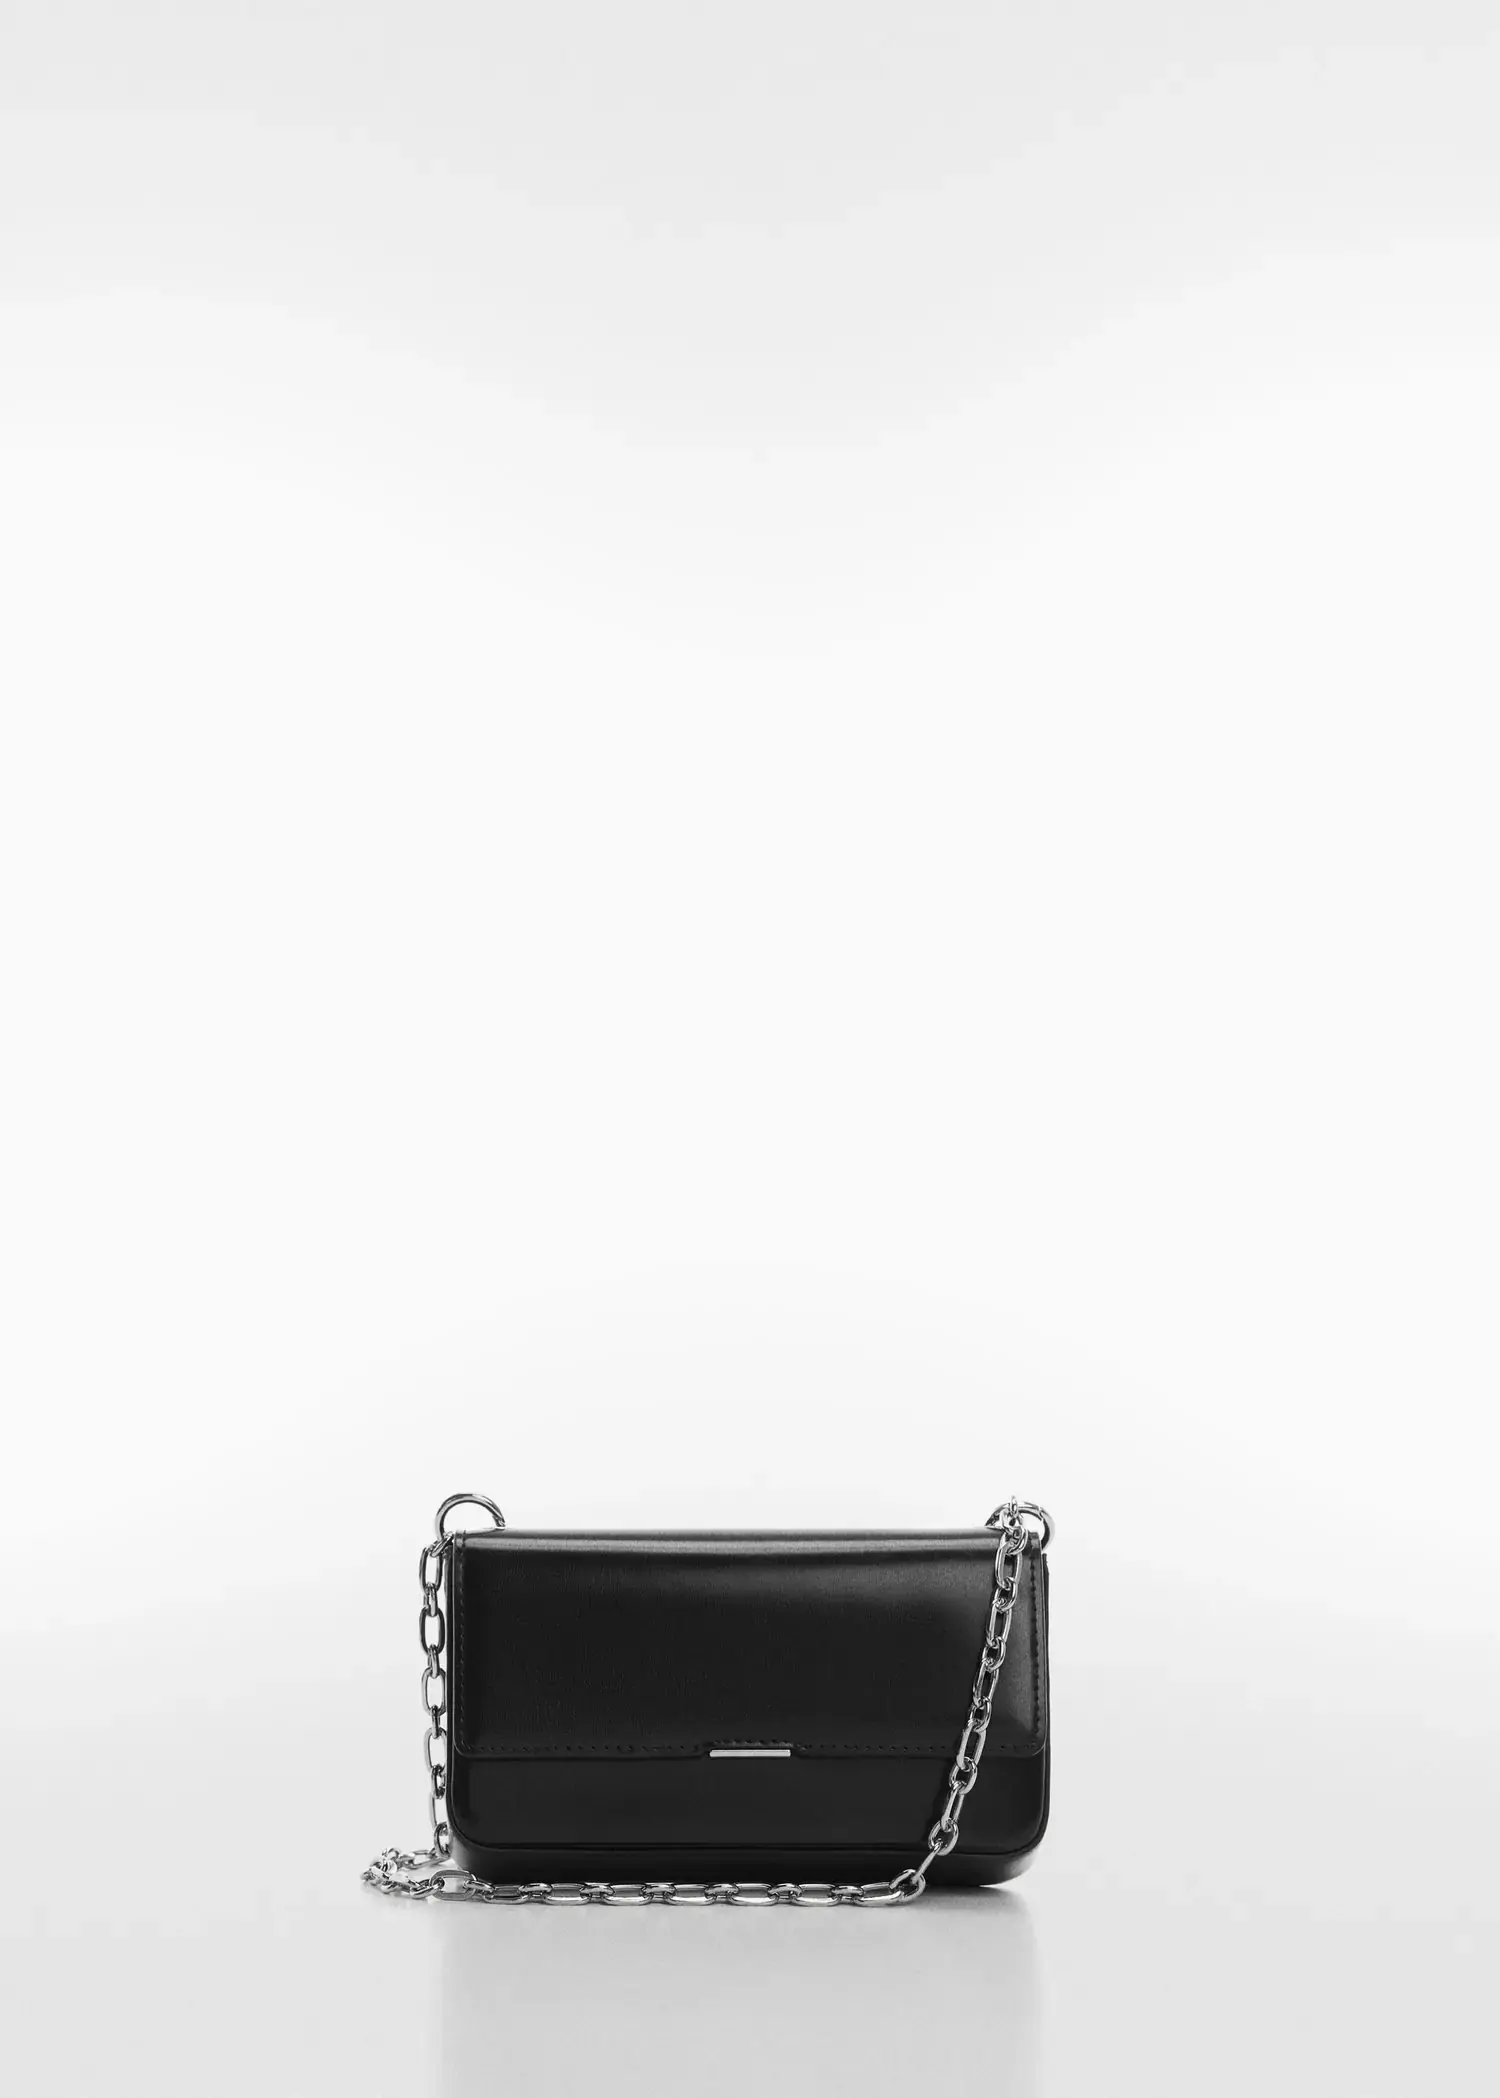 Mango Flap chain bag. a black purse with a silver chain strap. 